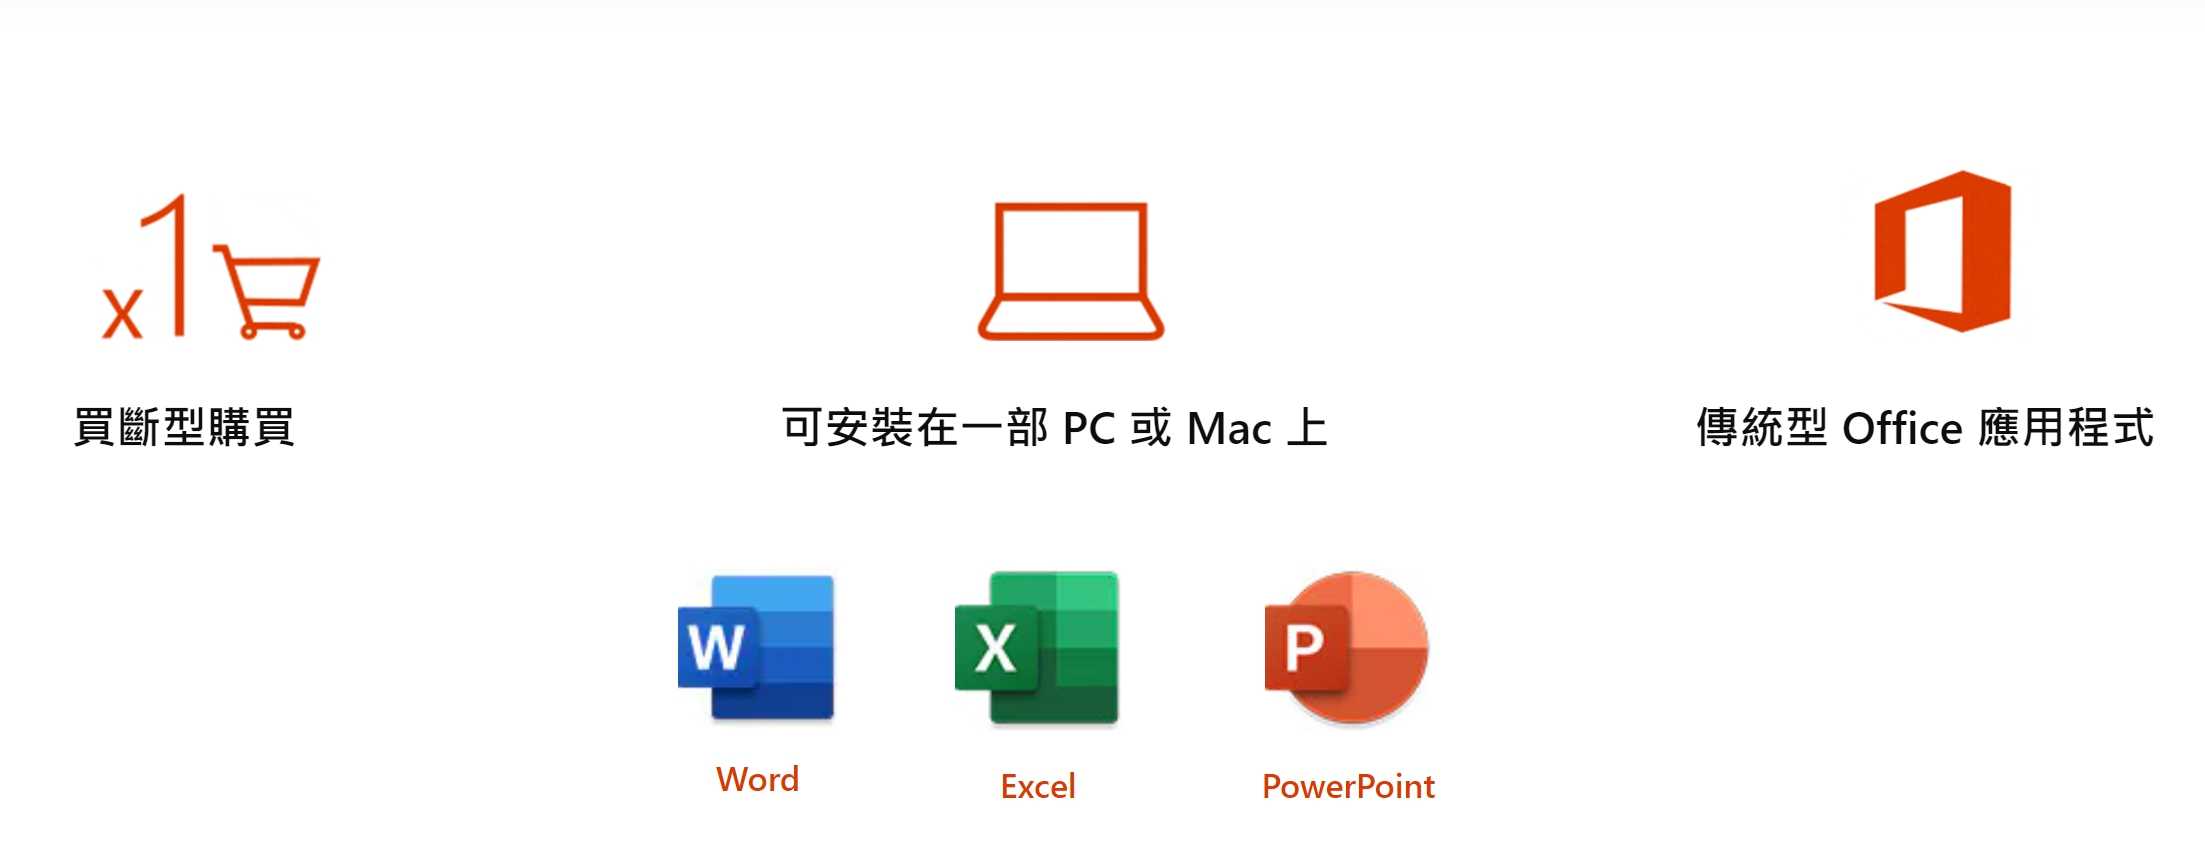 未稅價 微軟 Microsoft Office 2019 中文 家用及中小企業版 實體盒裝版 終身版